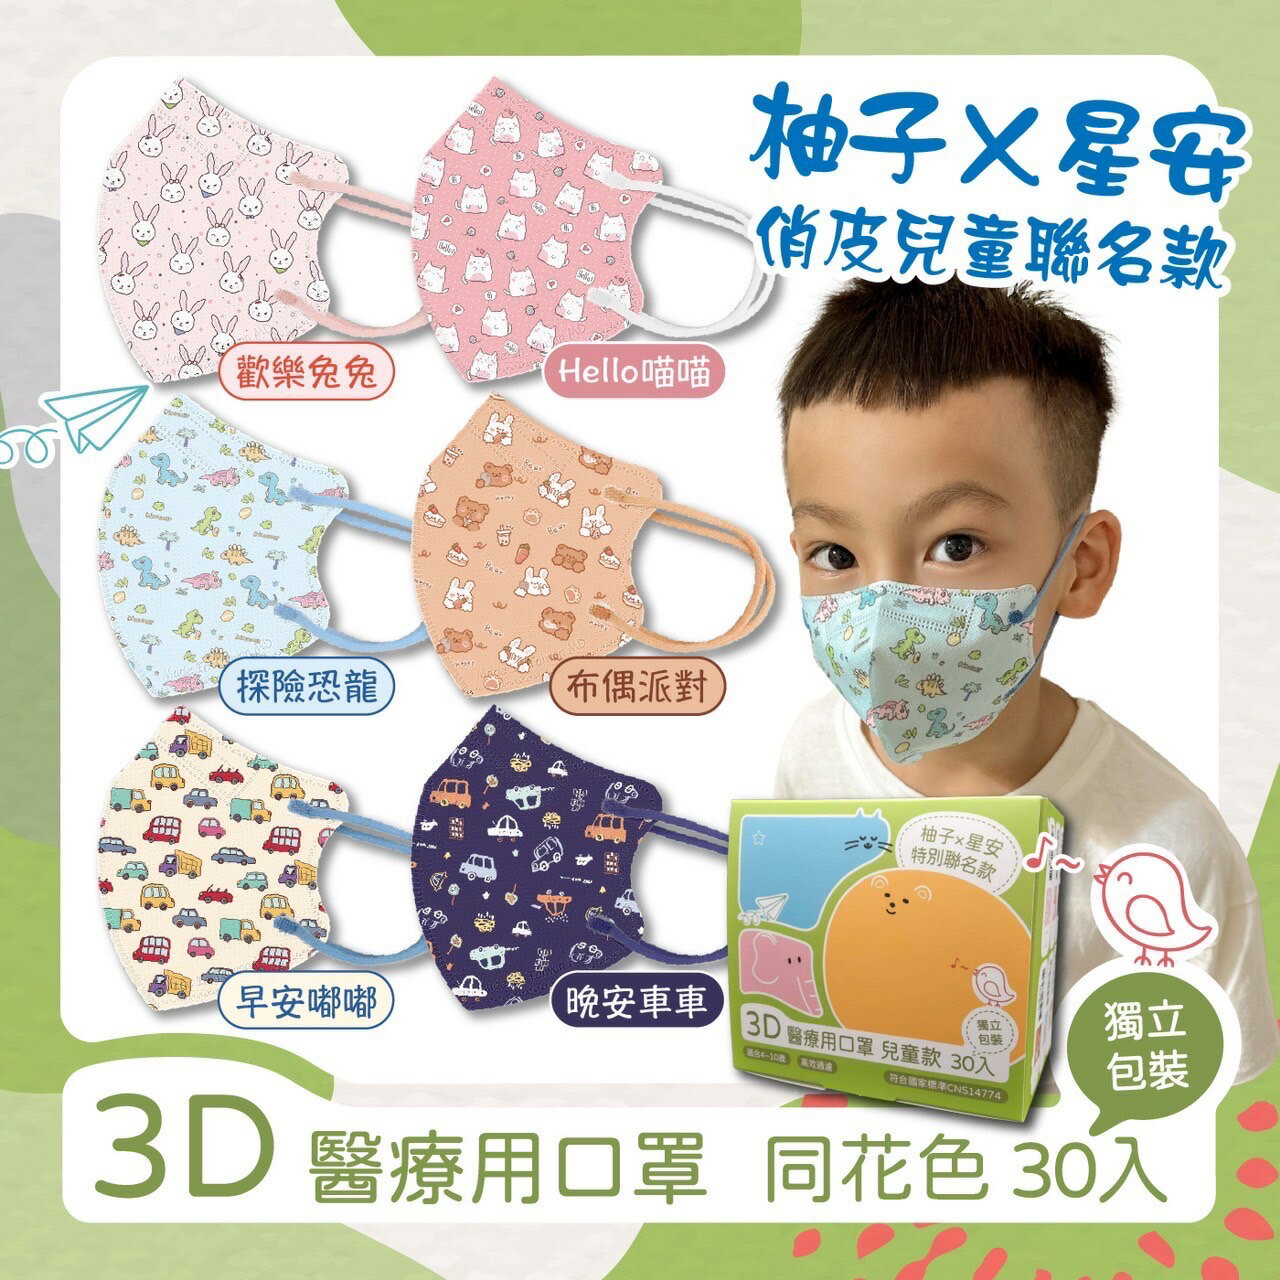 星安×柚子俏皮兒童聯名款 兒童3D立體醫用口罩 30入獨立包裝 雙鋼印 台灣製 醫療口罩 C型口罩